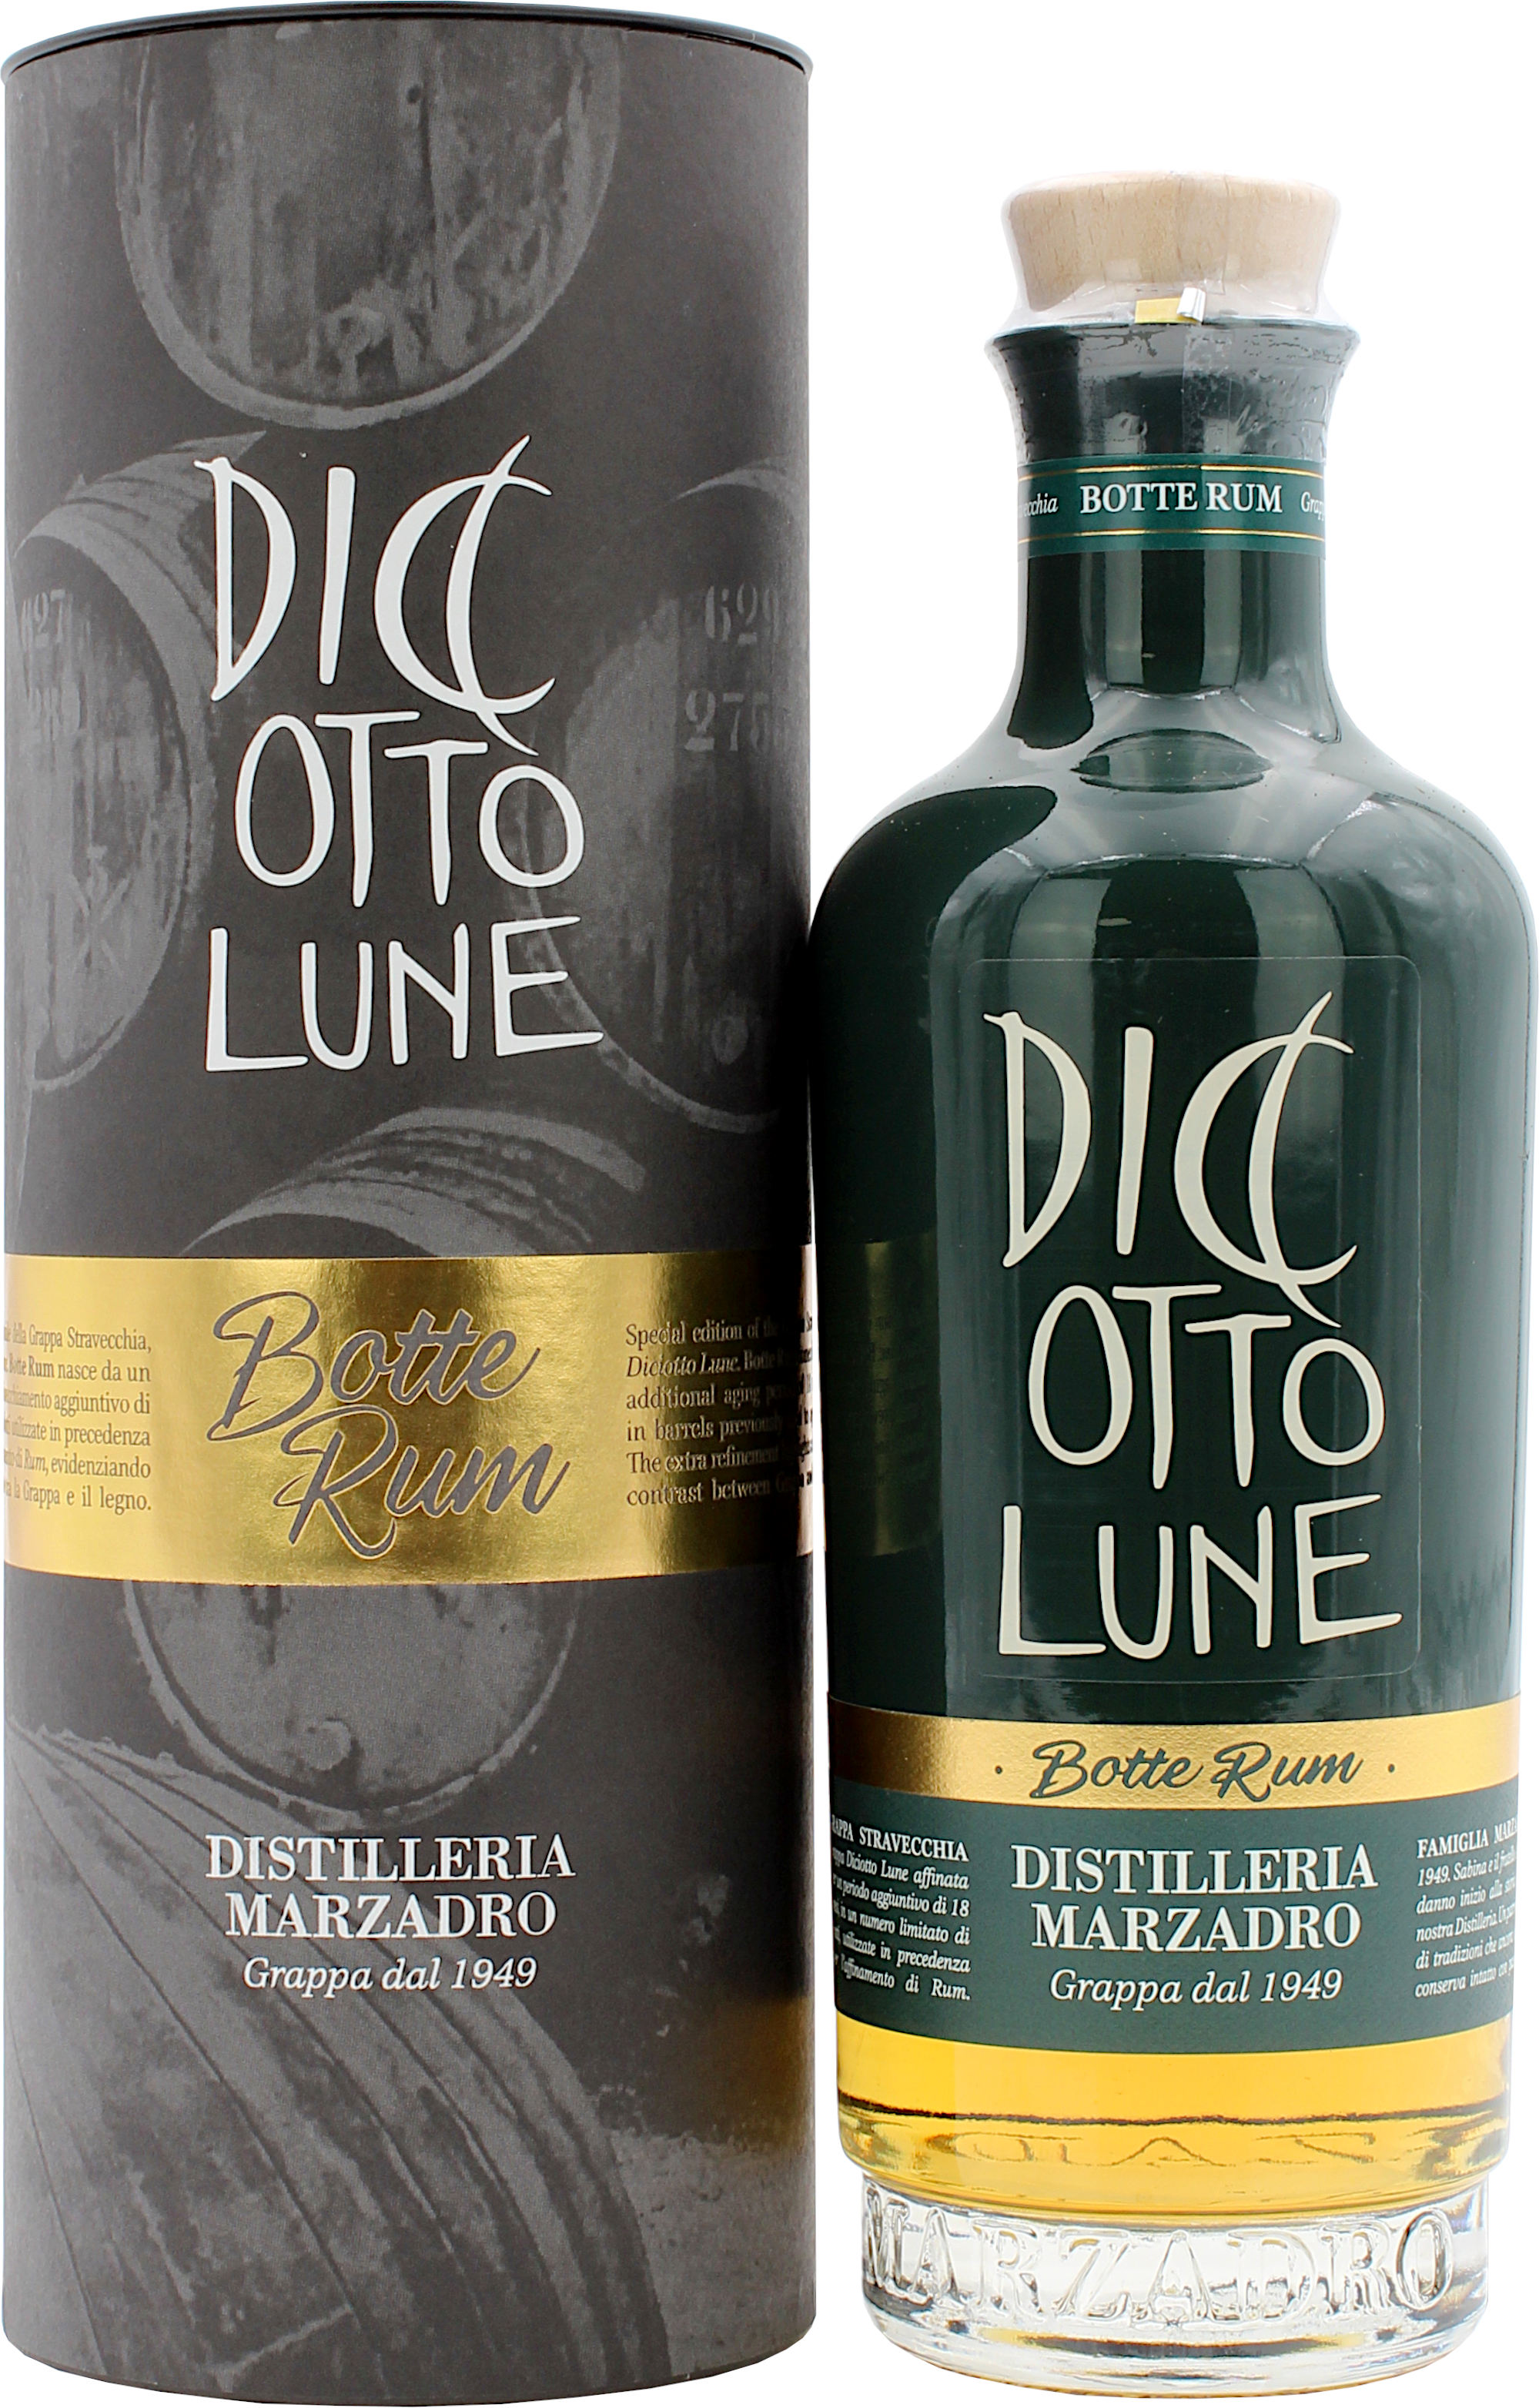 Marzadro Le Diciotto Lune Botte Rum Grappa 42.0% 0,5l